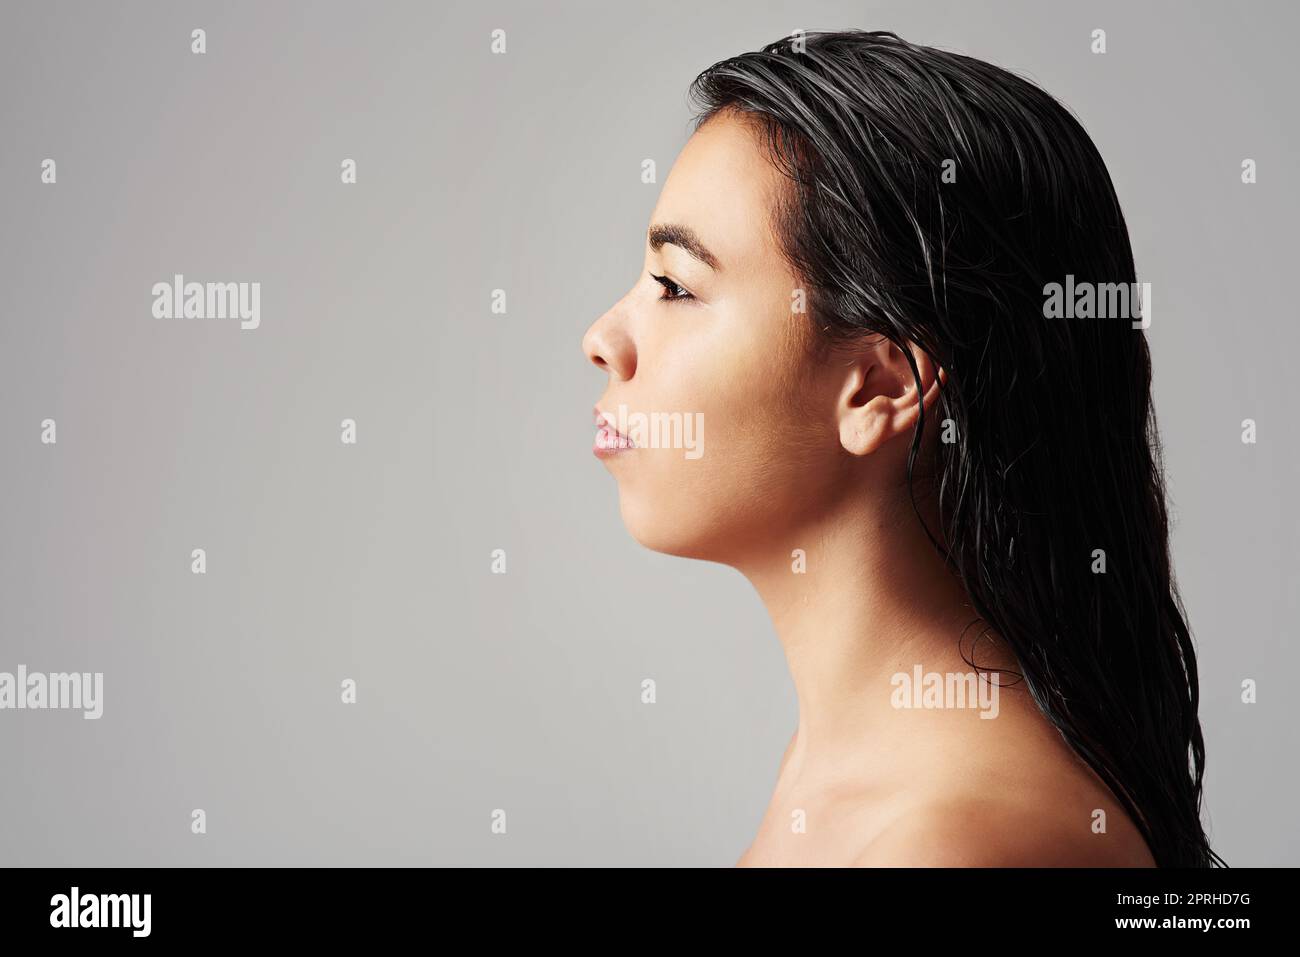 Frisch und sauber. Studioaufnahme einer jungen Frau mit nassem Haar, die vor grauem Hintergrund posiert. Stockfoto